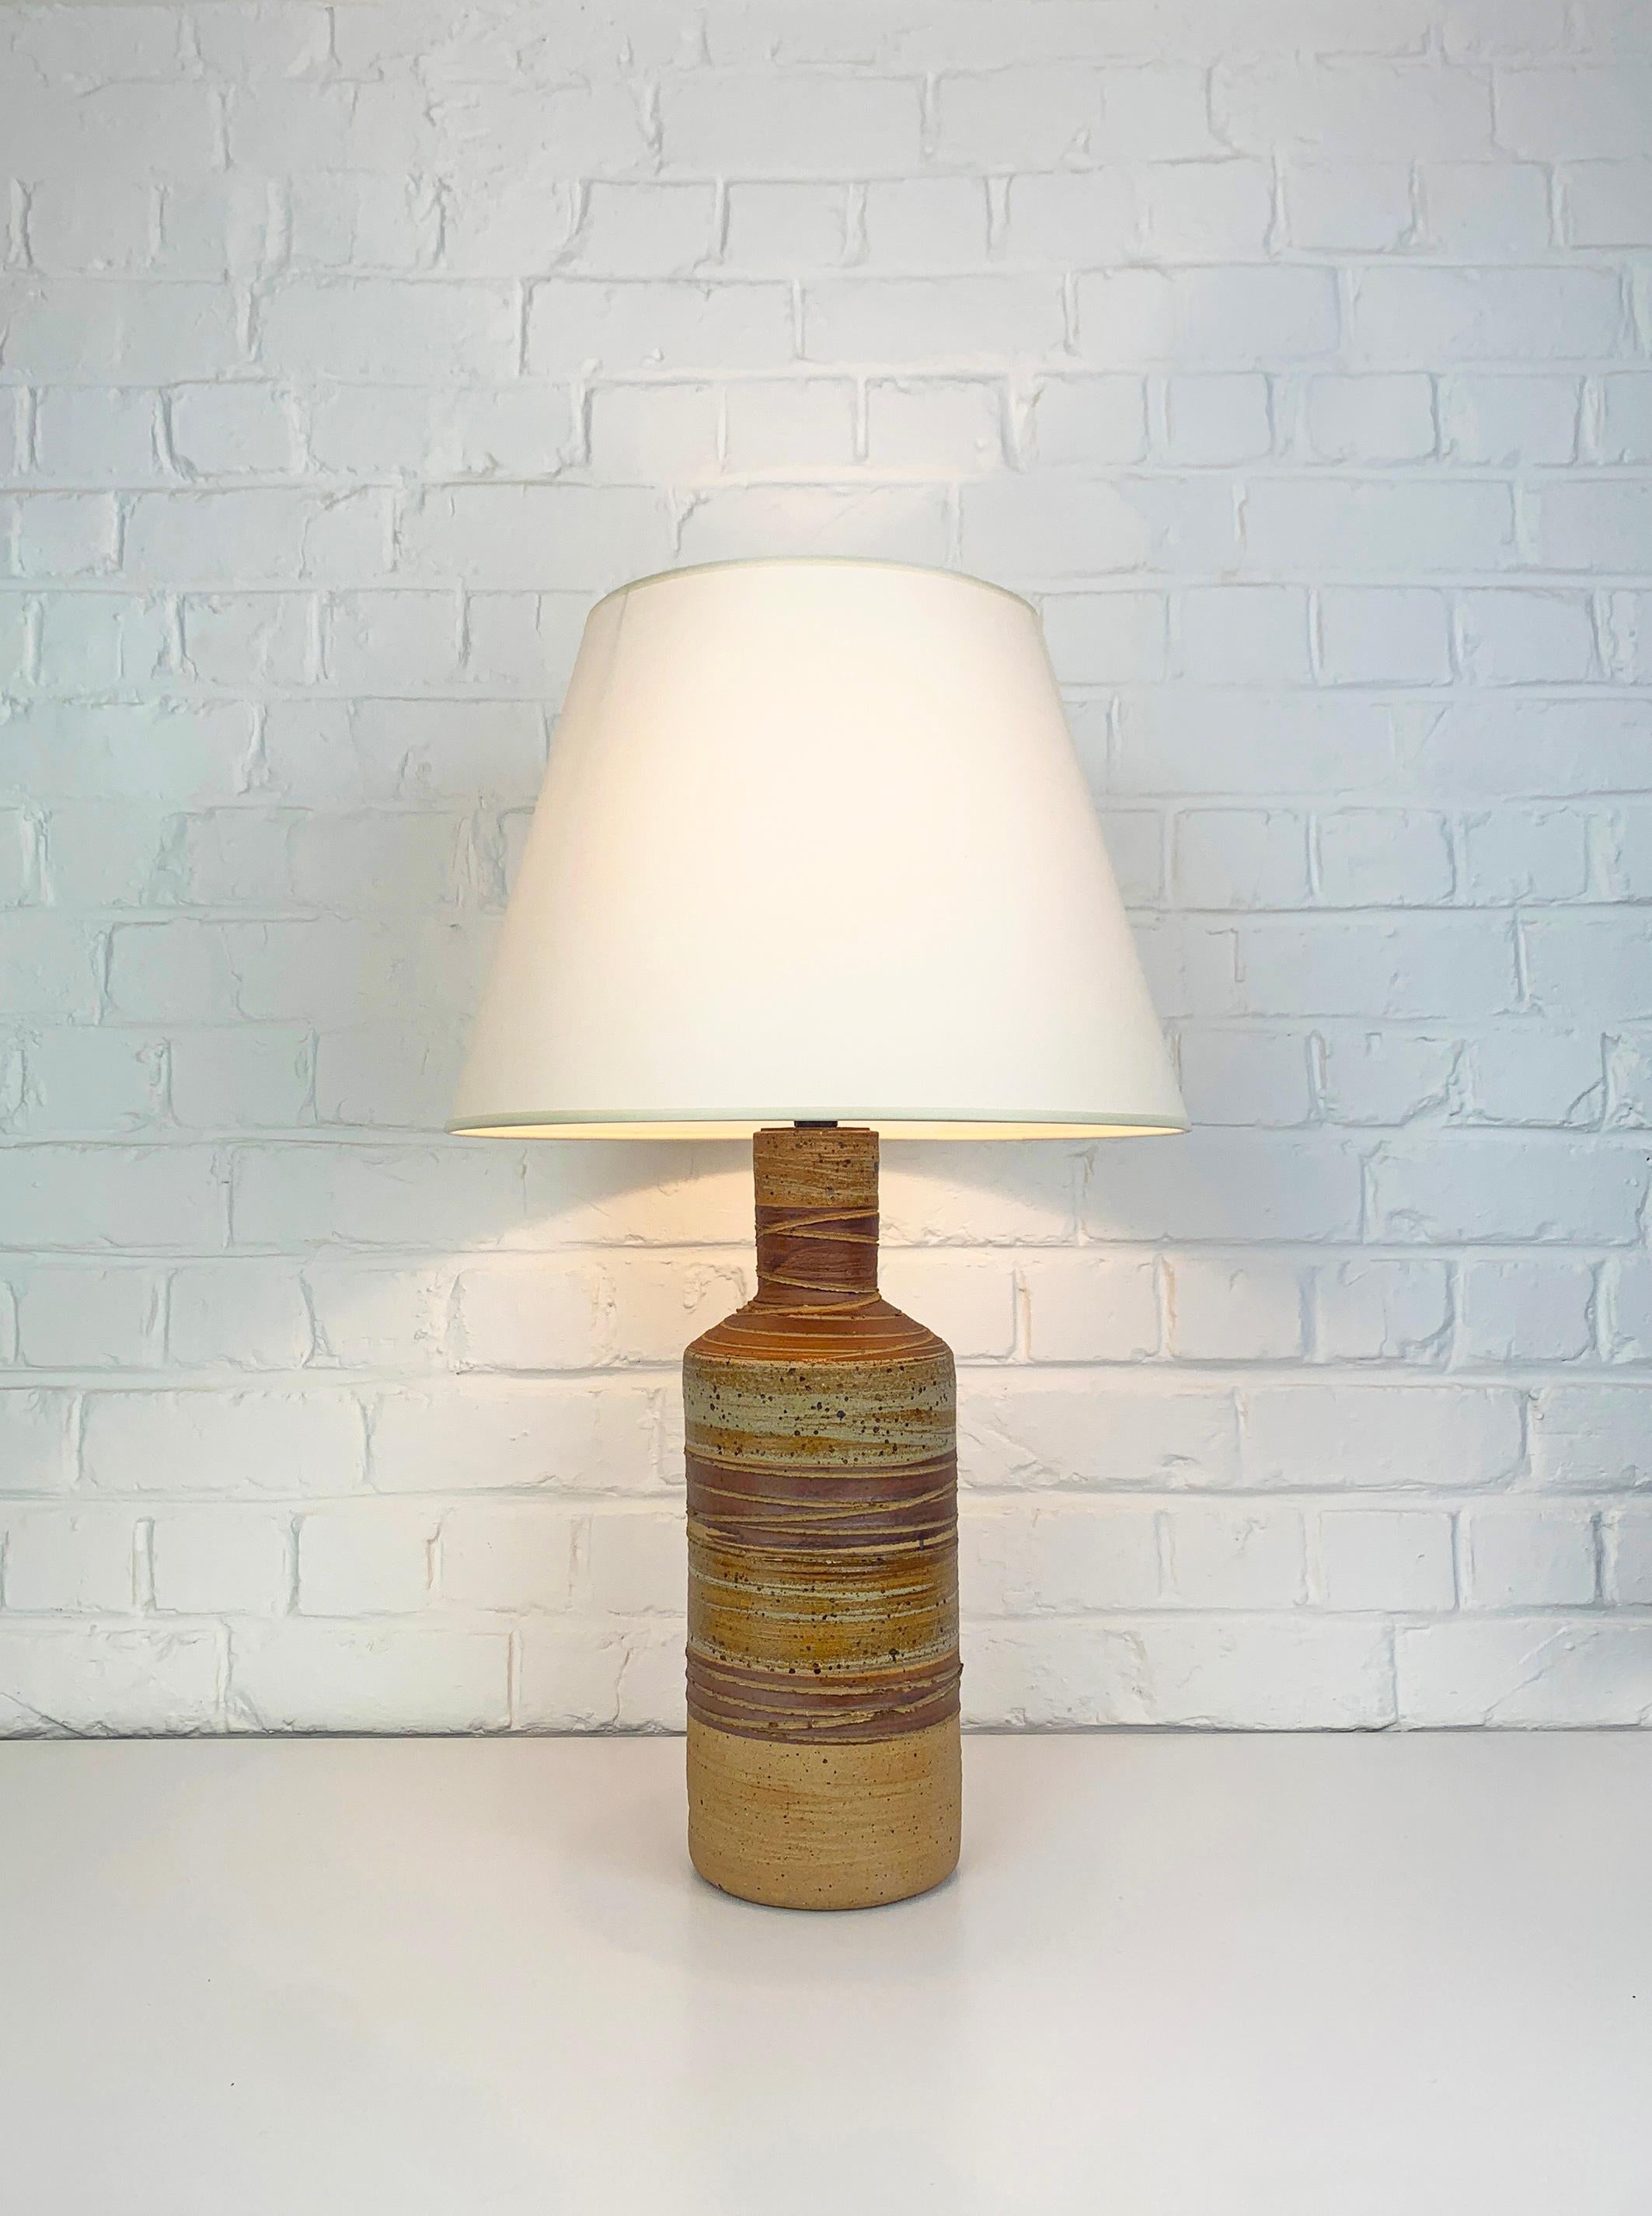 Lampe de table rustique créée par Tue Poulsen (Danemark). Fabriqué dans les années 1970-80 dans le propre Studio de Tue Poulsen.

Le pied de la lampe est en terre chamottée et décoré de rayures dans les couleurs de terre brun-beige. L'argile